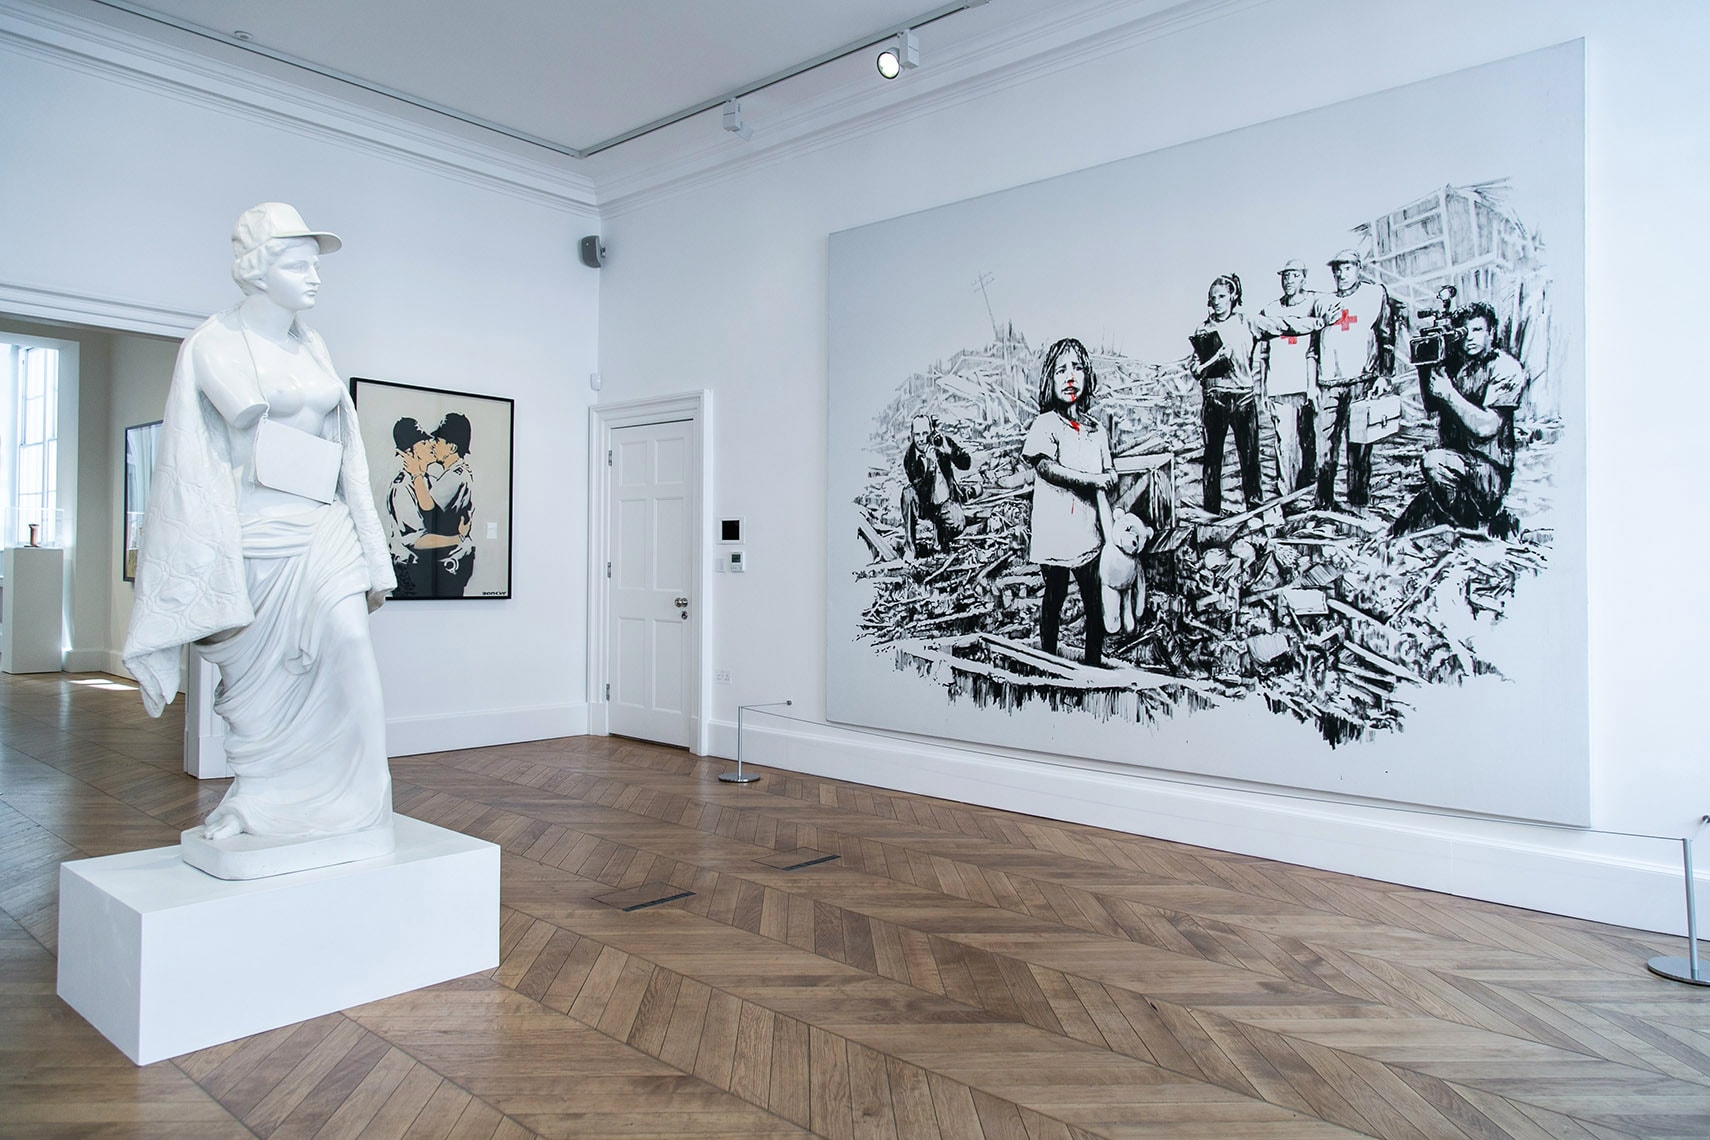 Banksy "Greatest Hits" Exhibition Lazinc London Closer Look Inside Famous Art Pieces